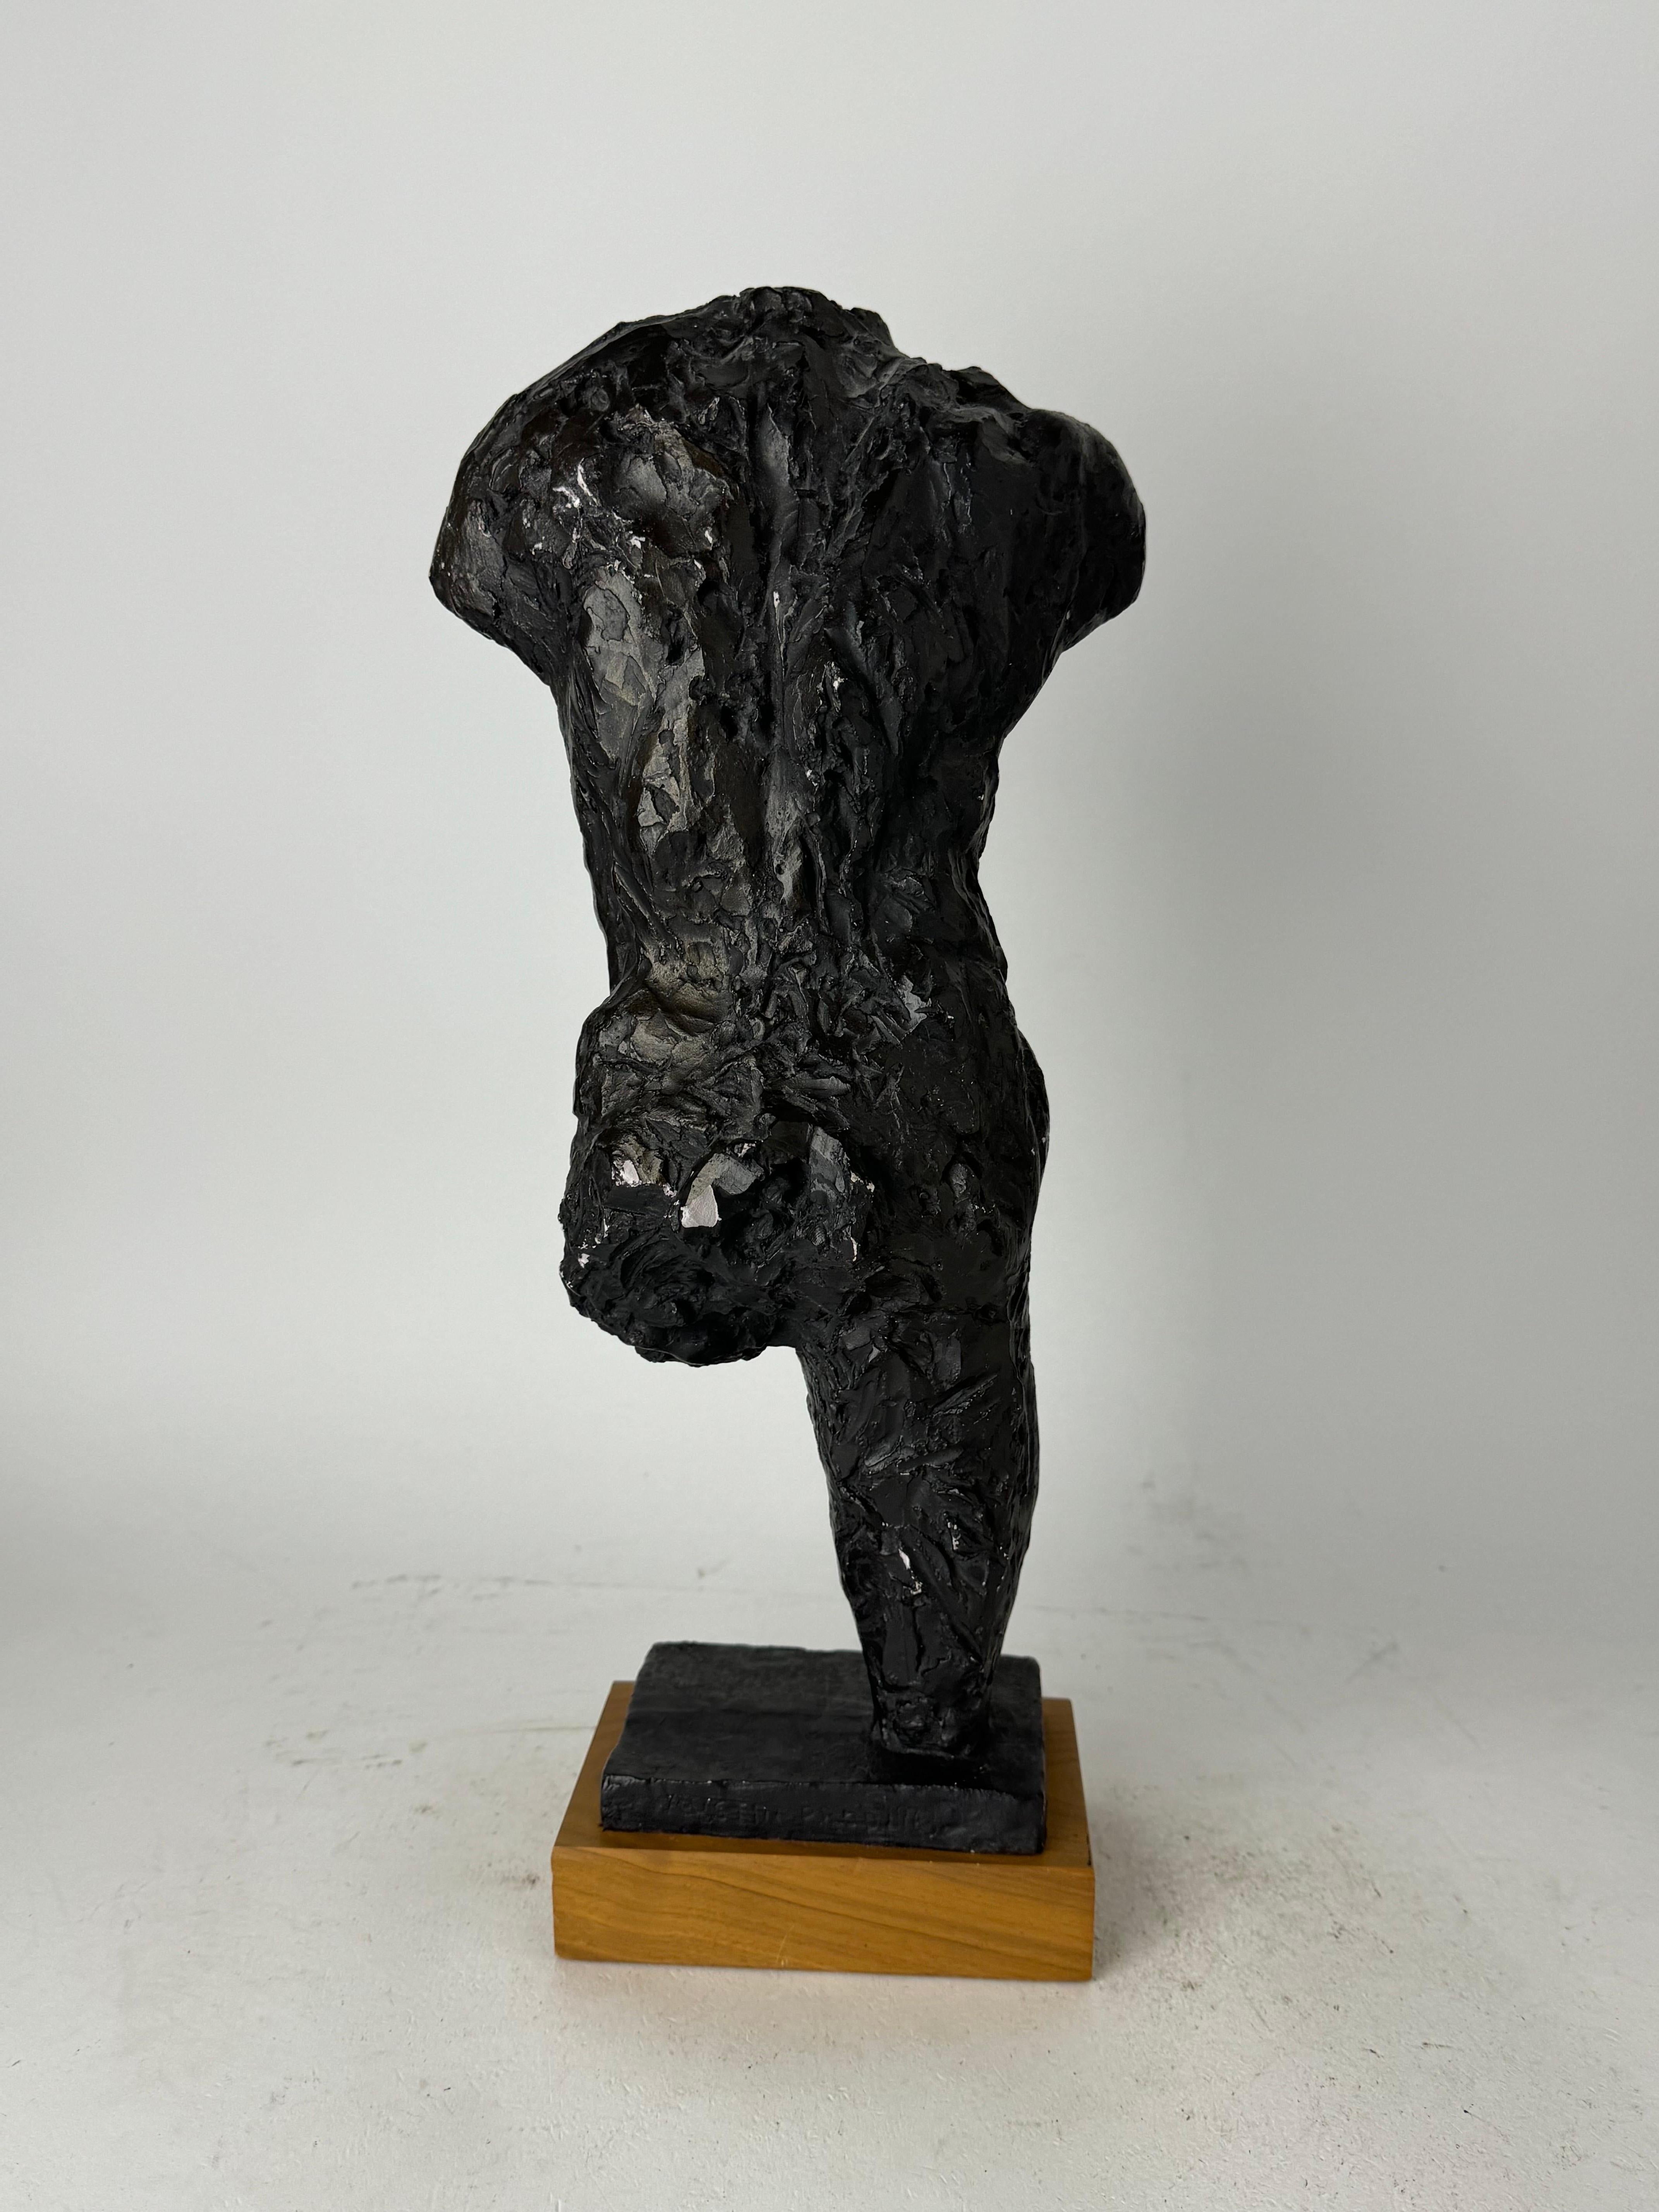 Américain Sculpture de Rodin « Le marcheur, étude pour le torse », Austin Productions, 1963